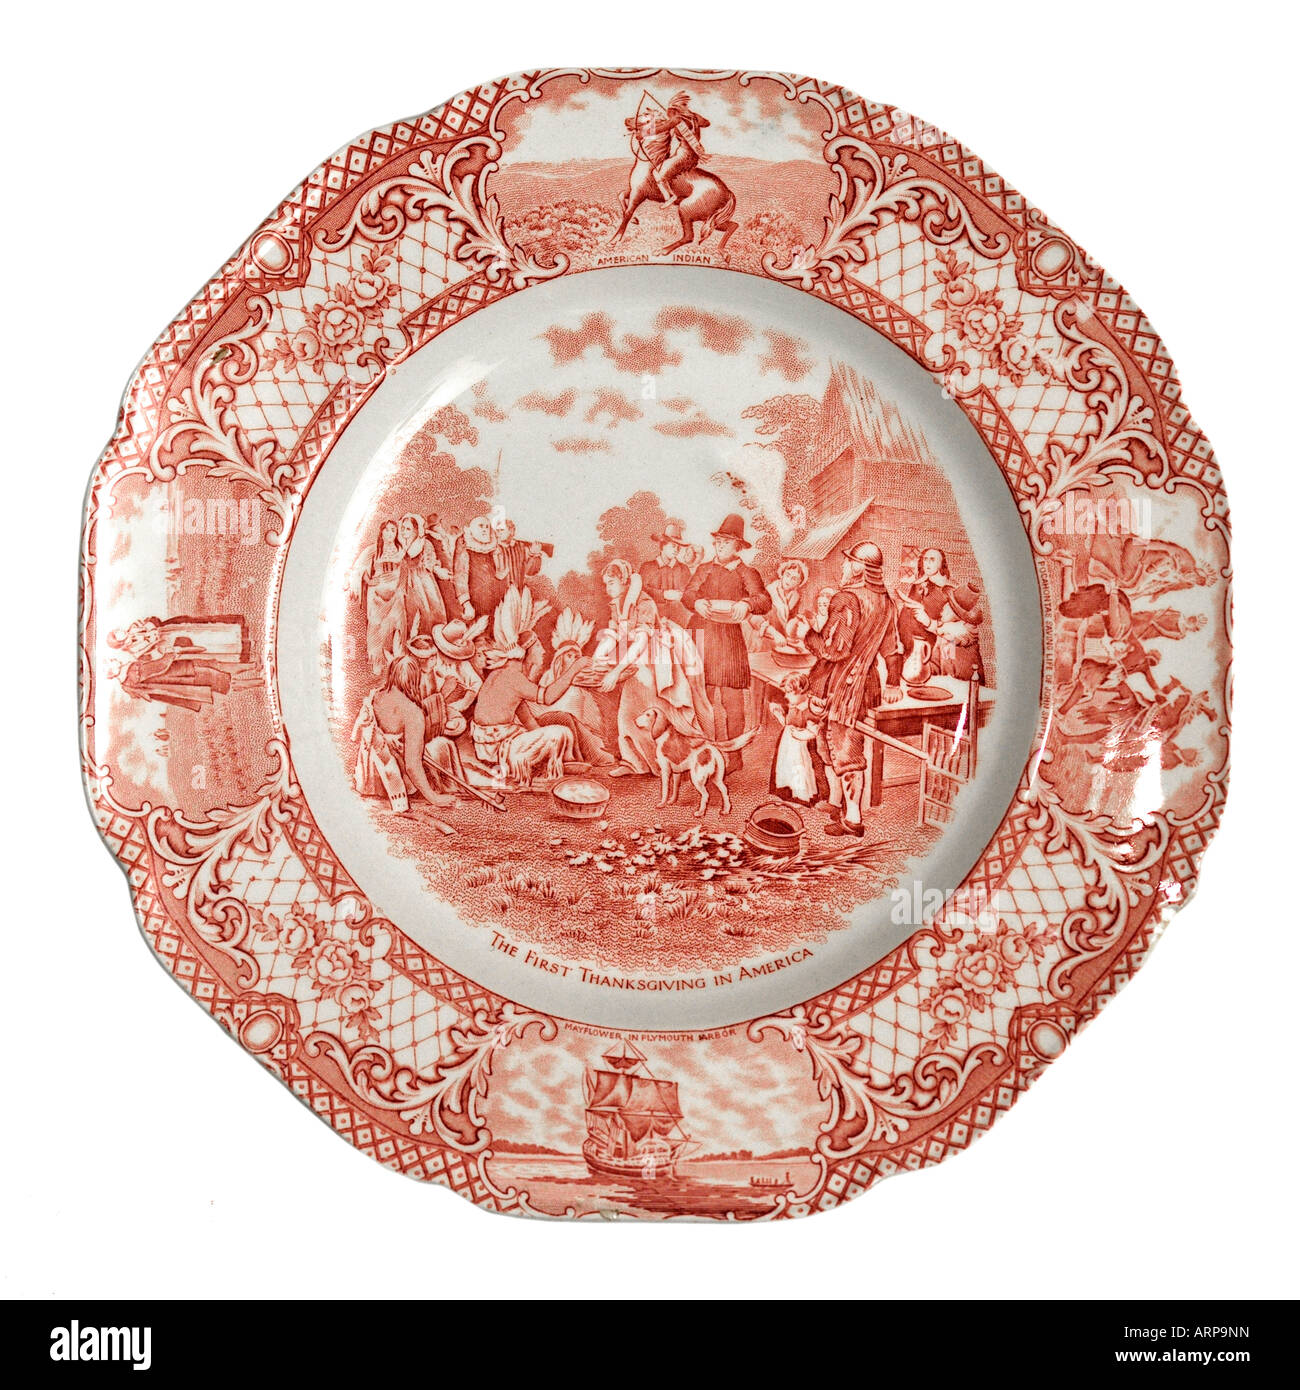 Das erste Thanksgiving in Amerika Platte von Krone herzoglichen Keramik nur zur redaktionellen Verwendung Stockfoto